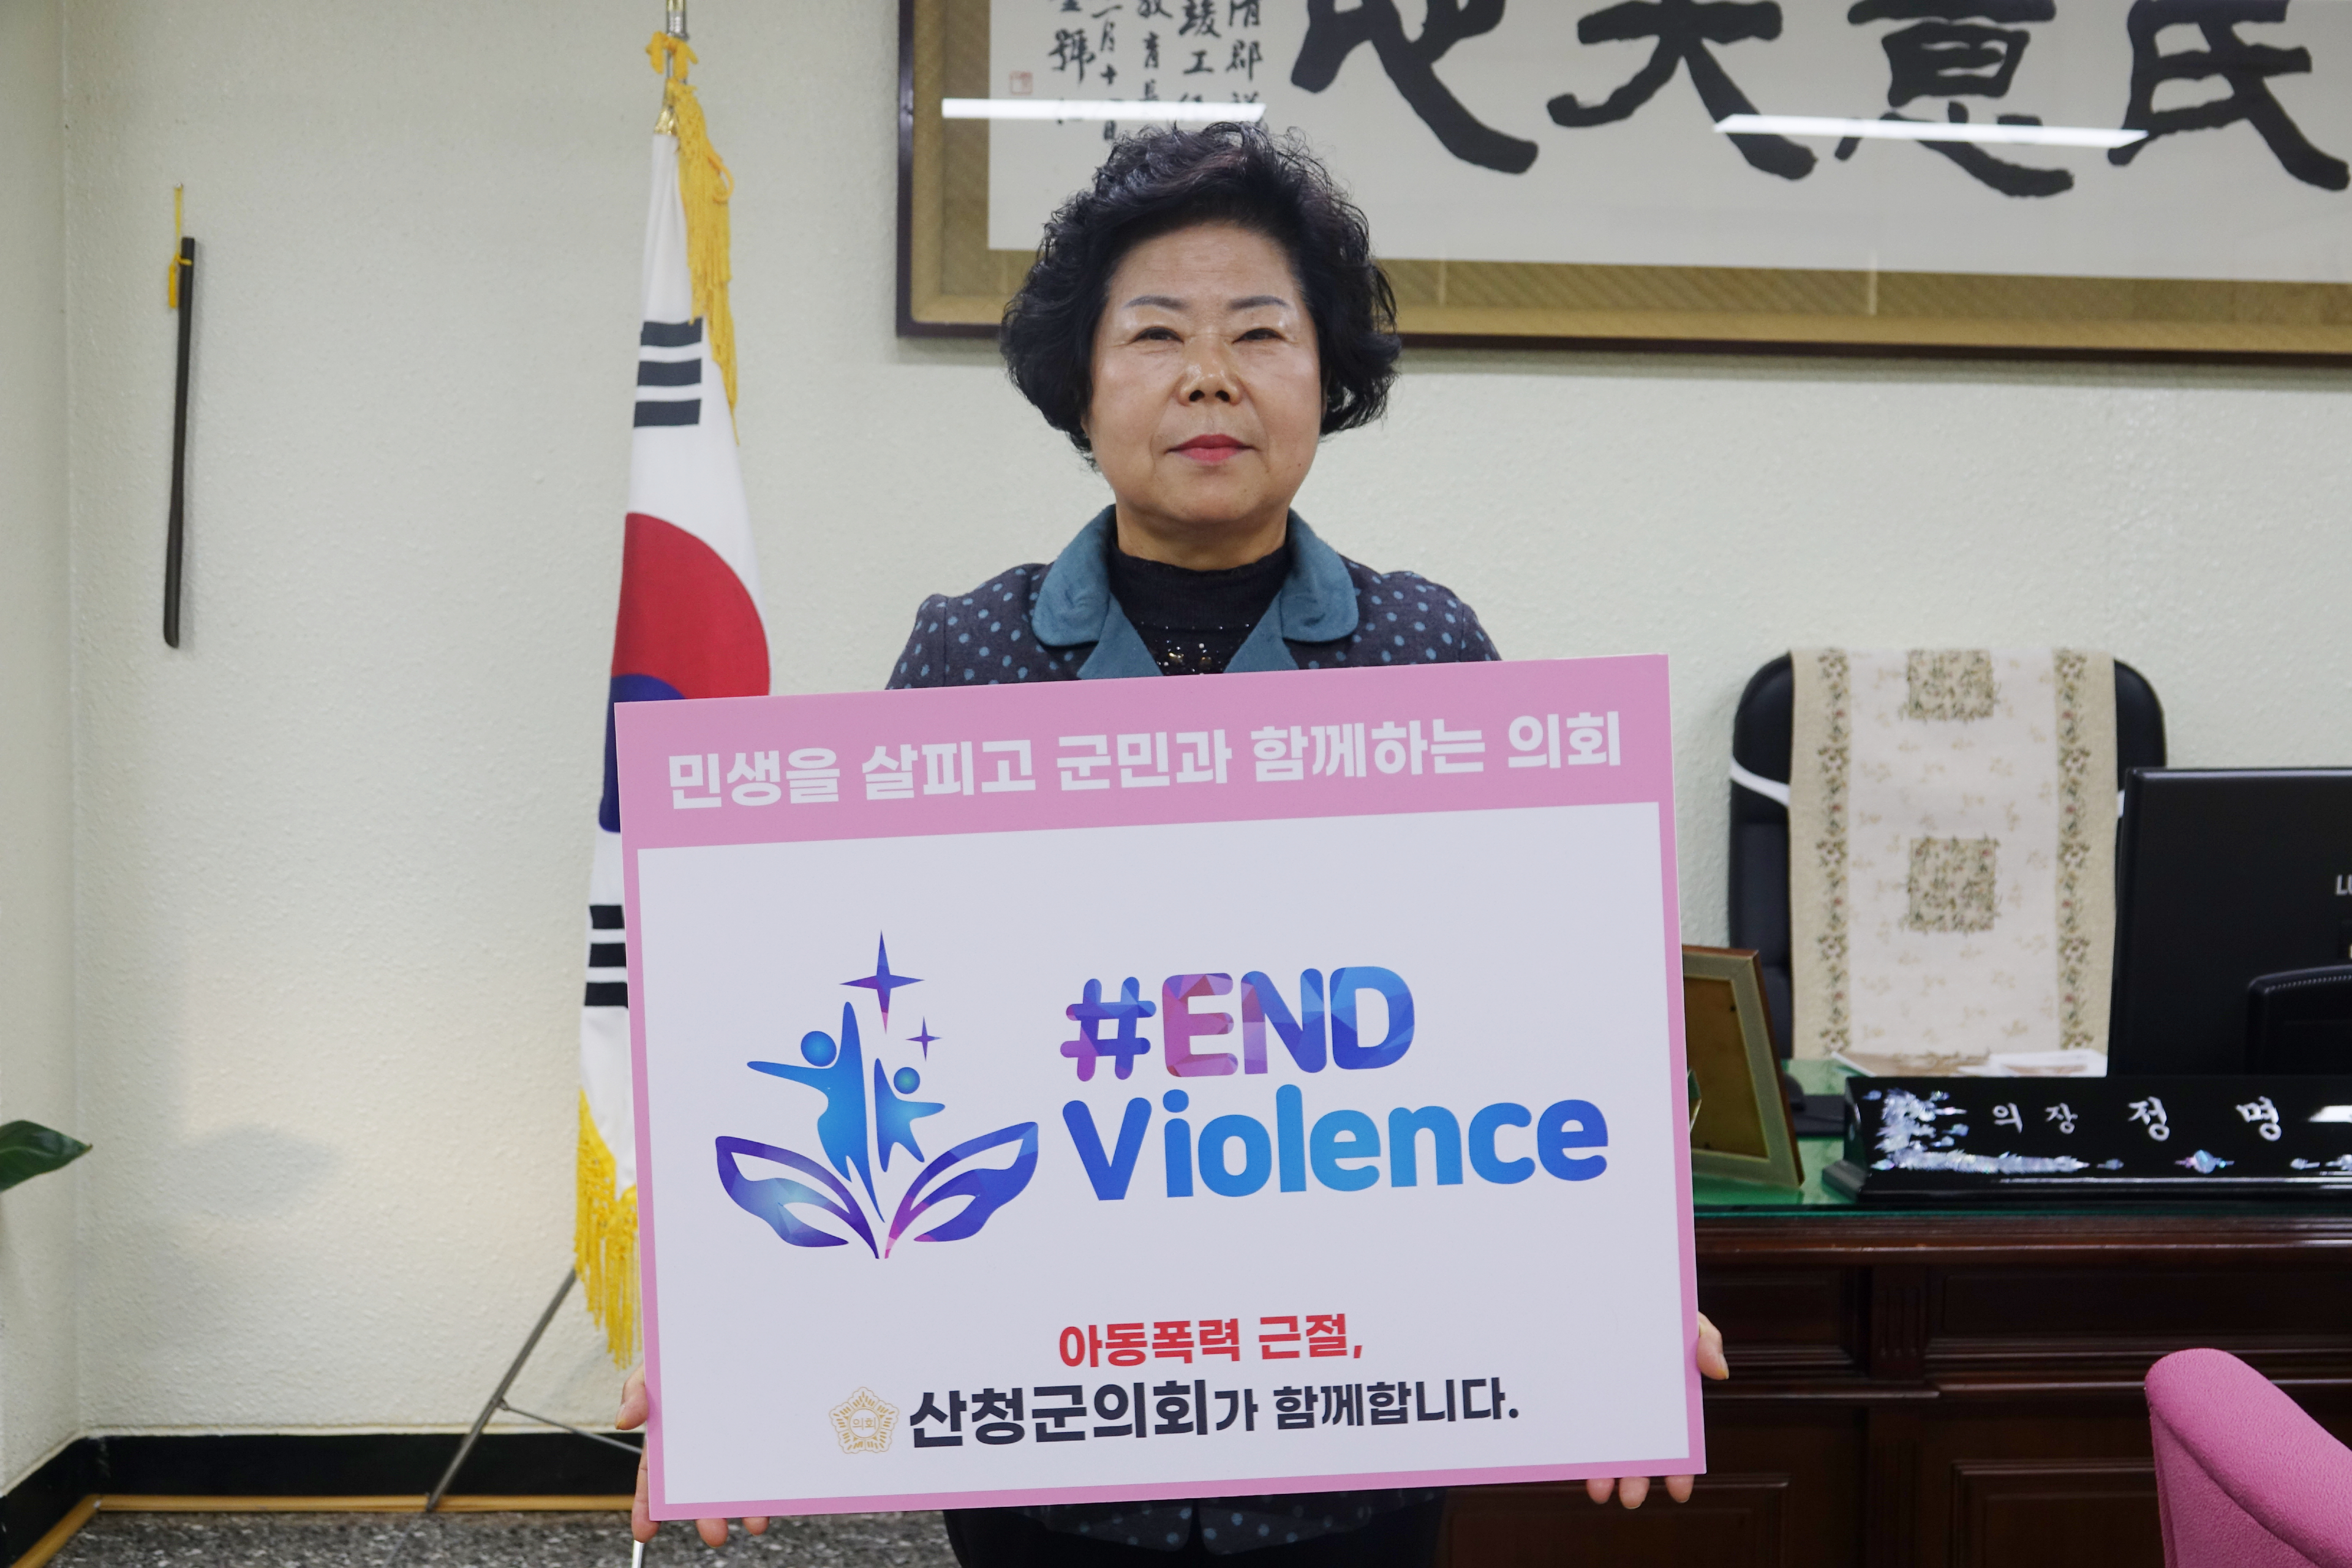 산청군의회 정명순 의장 아동폭력 근절 온라인 캠페인(#ENDviolence 챌린지) 참여 1